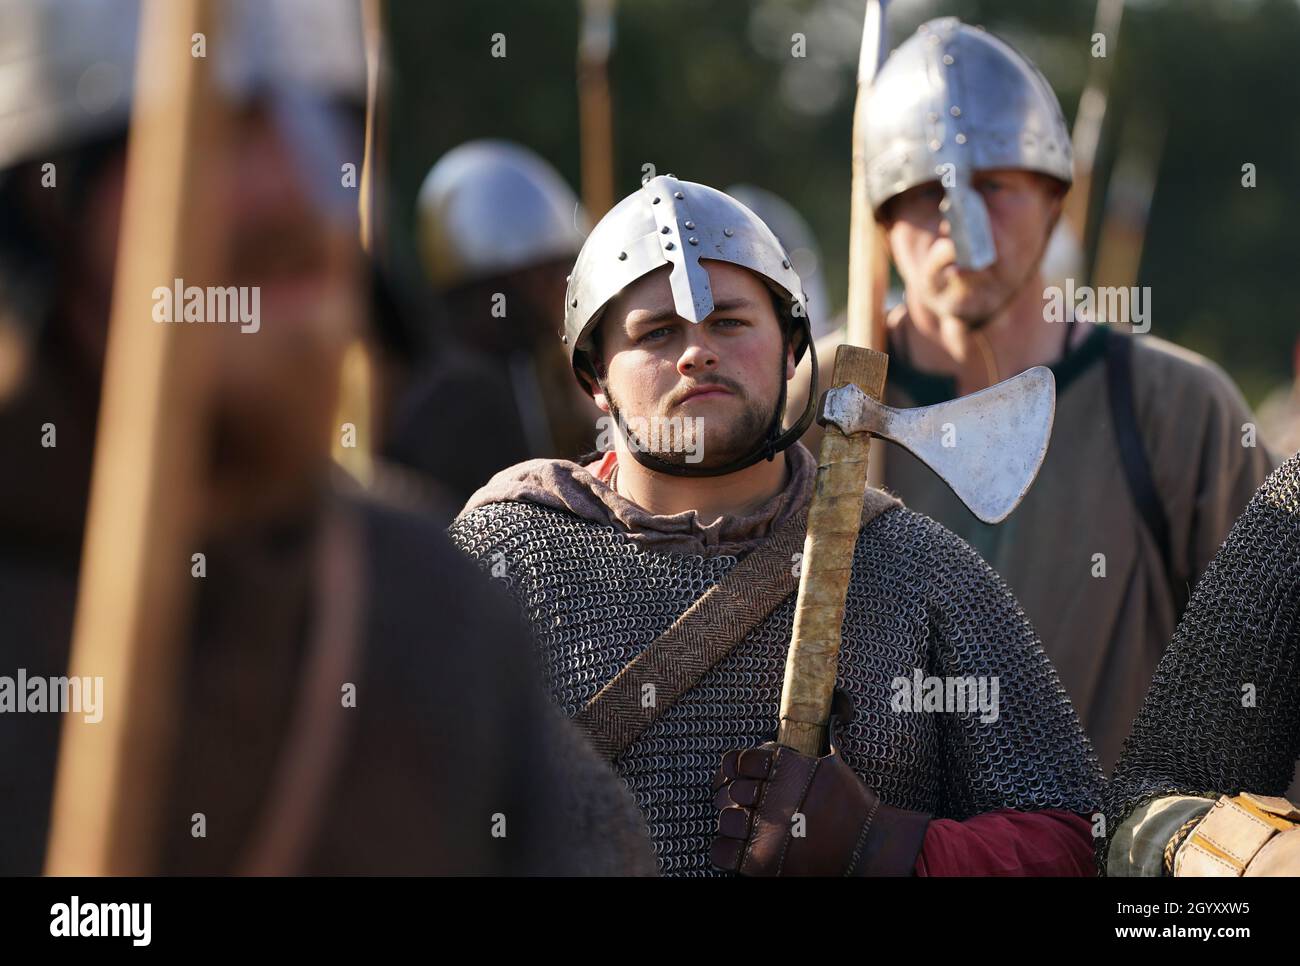 Die Re-enactors bereiten sich auf die Nachstellung der Schlacht von Hastings in der Battle Abbey in Sussex vor ihrem Jahrestag am 14. Oktober vor. Bilddatum: Samstag, 9. Oktober 2021. Stockfoto